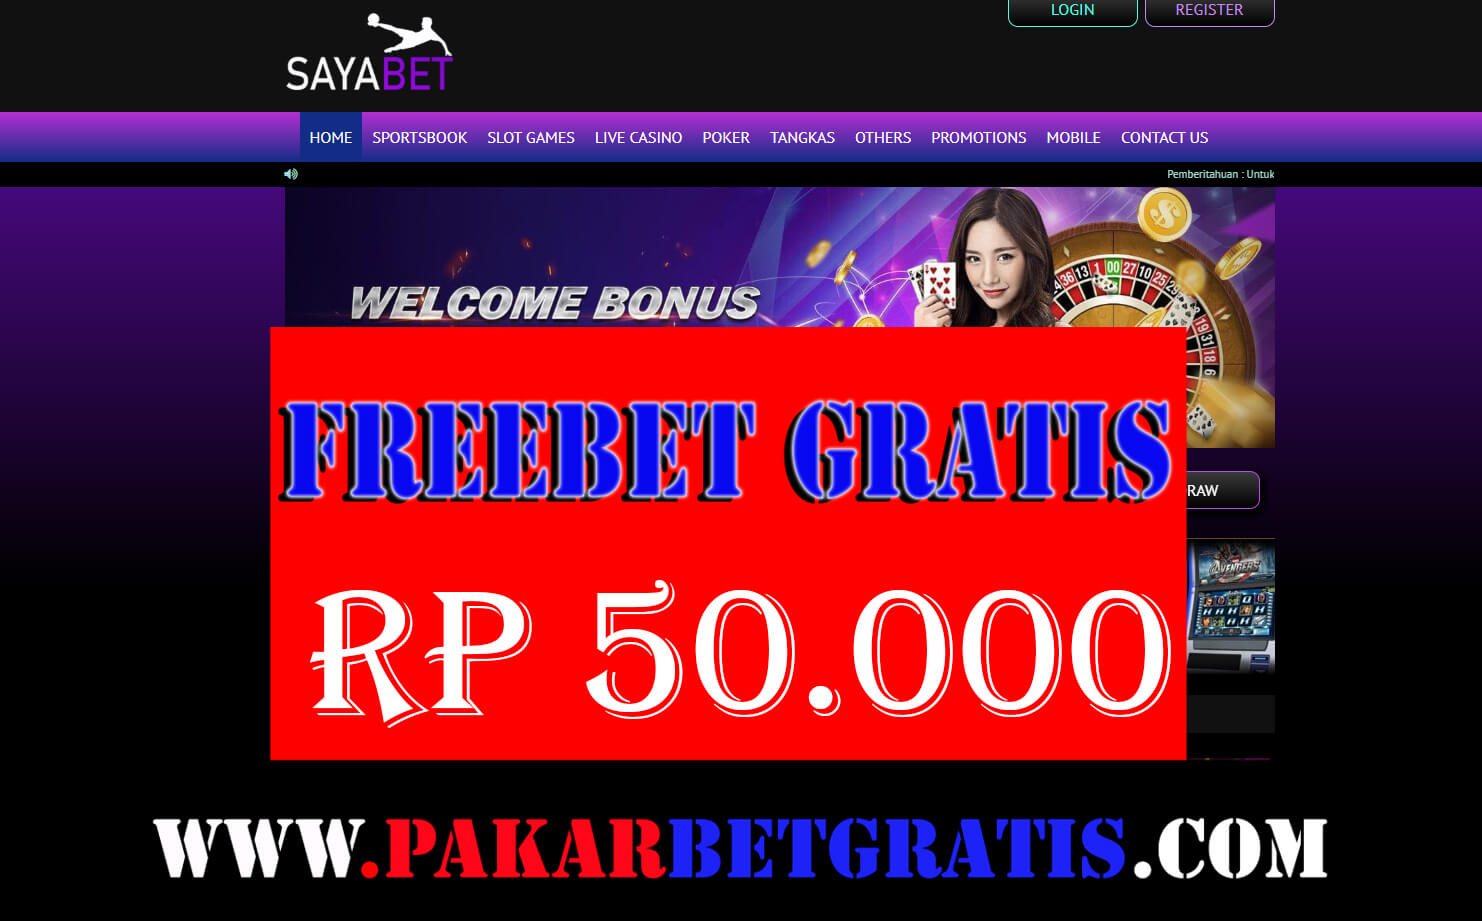 Freebet Gratis sayabet Rp 50.000 Tanpa Deposit